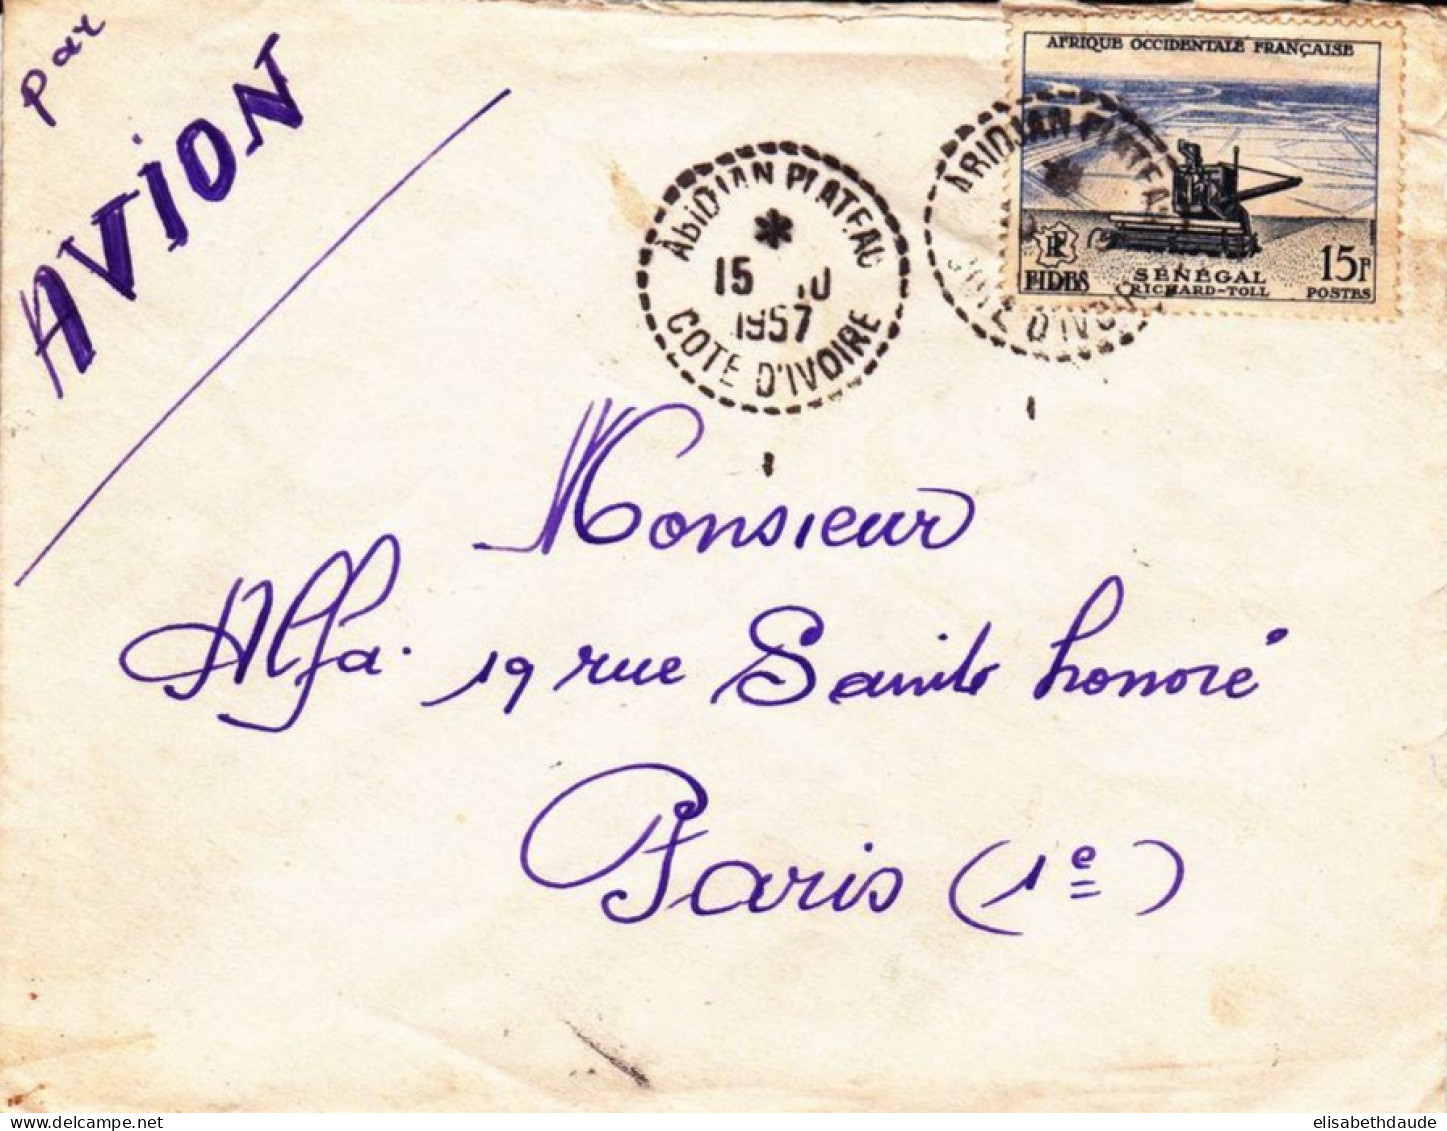 AOF - 1957 - ENVELOPPE Par AVION De ABIDJAN PLATEAU (BUREAU DE DISTRIBUTION) COTE D'IVOIRE Pour PARIS - FIDES - Covers & Documents